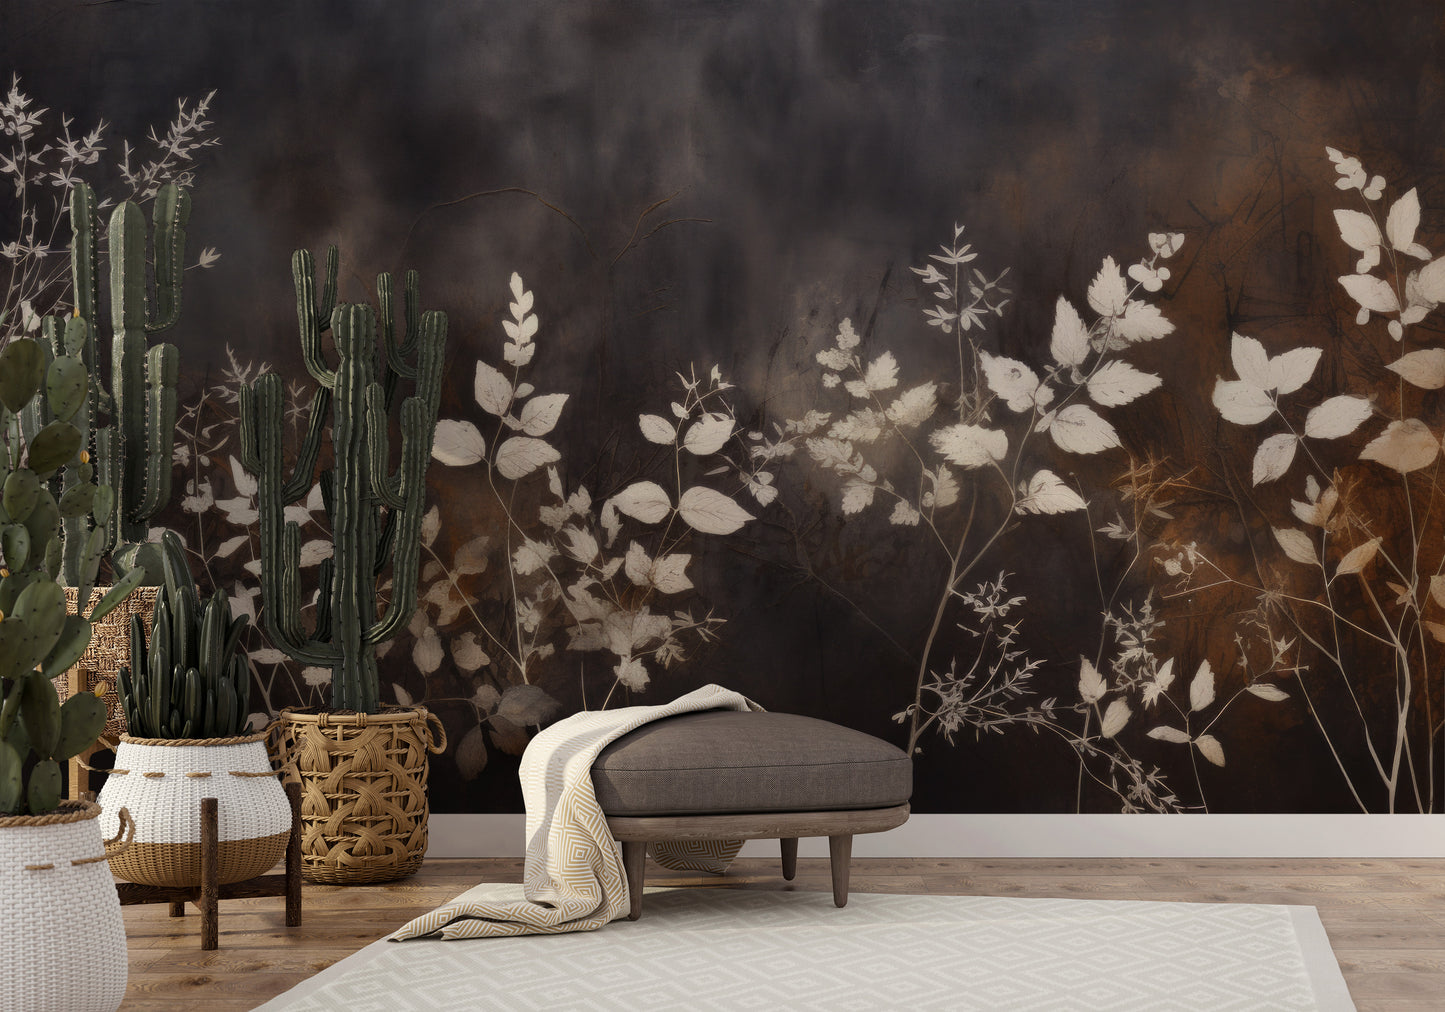 Fototapeta o nazwie Misty Floral Contrast użyta w aranzacji wnętrza.